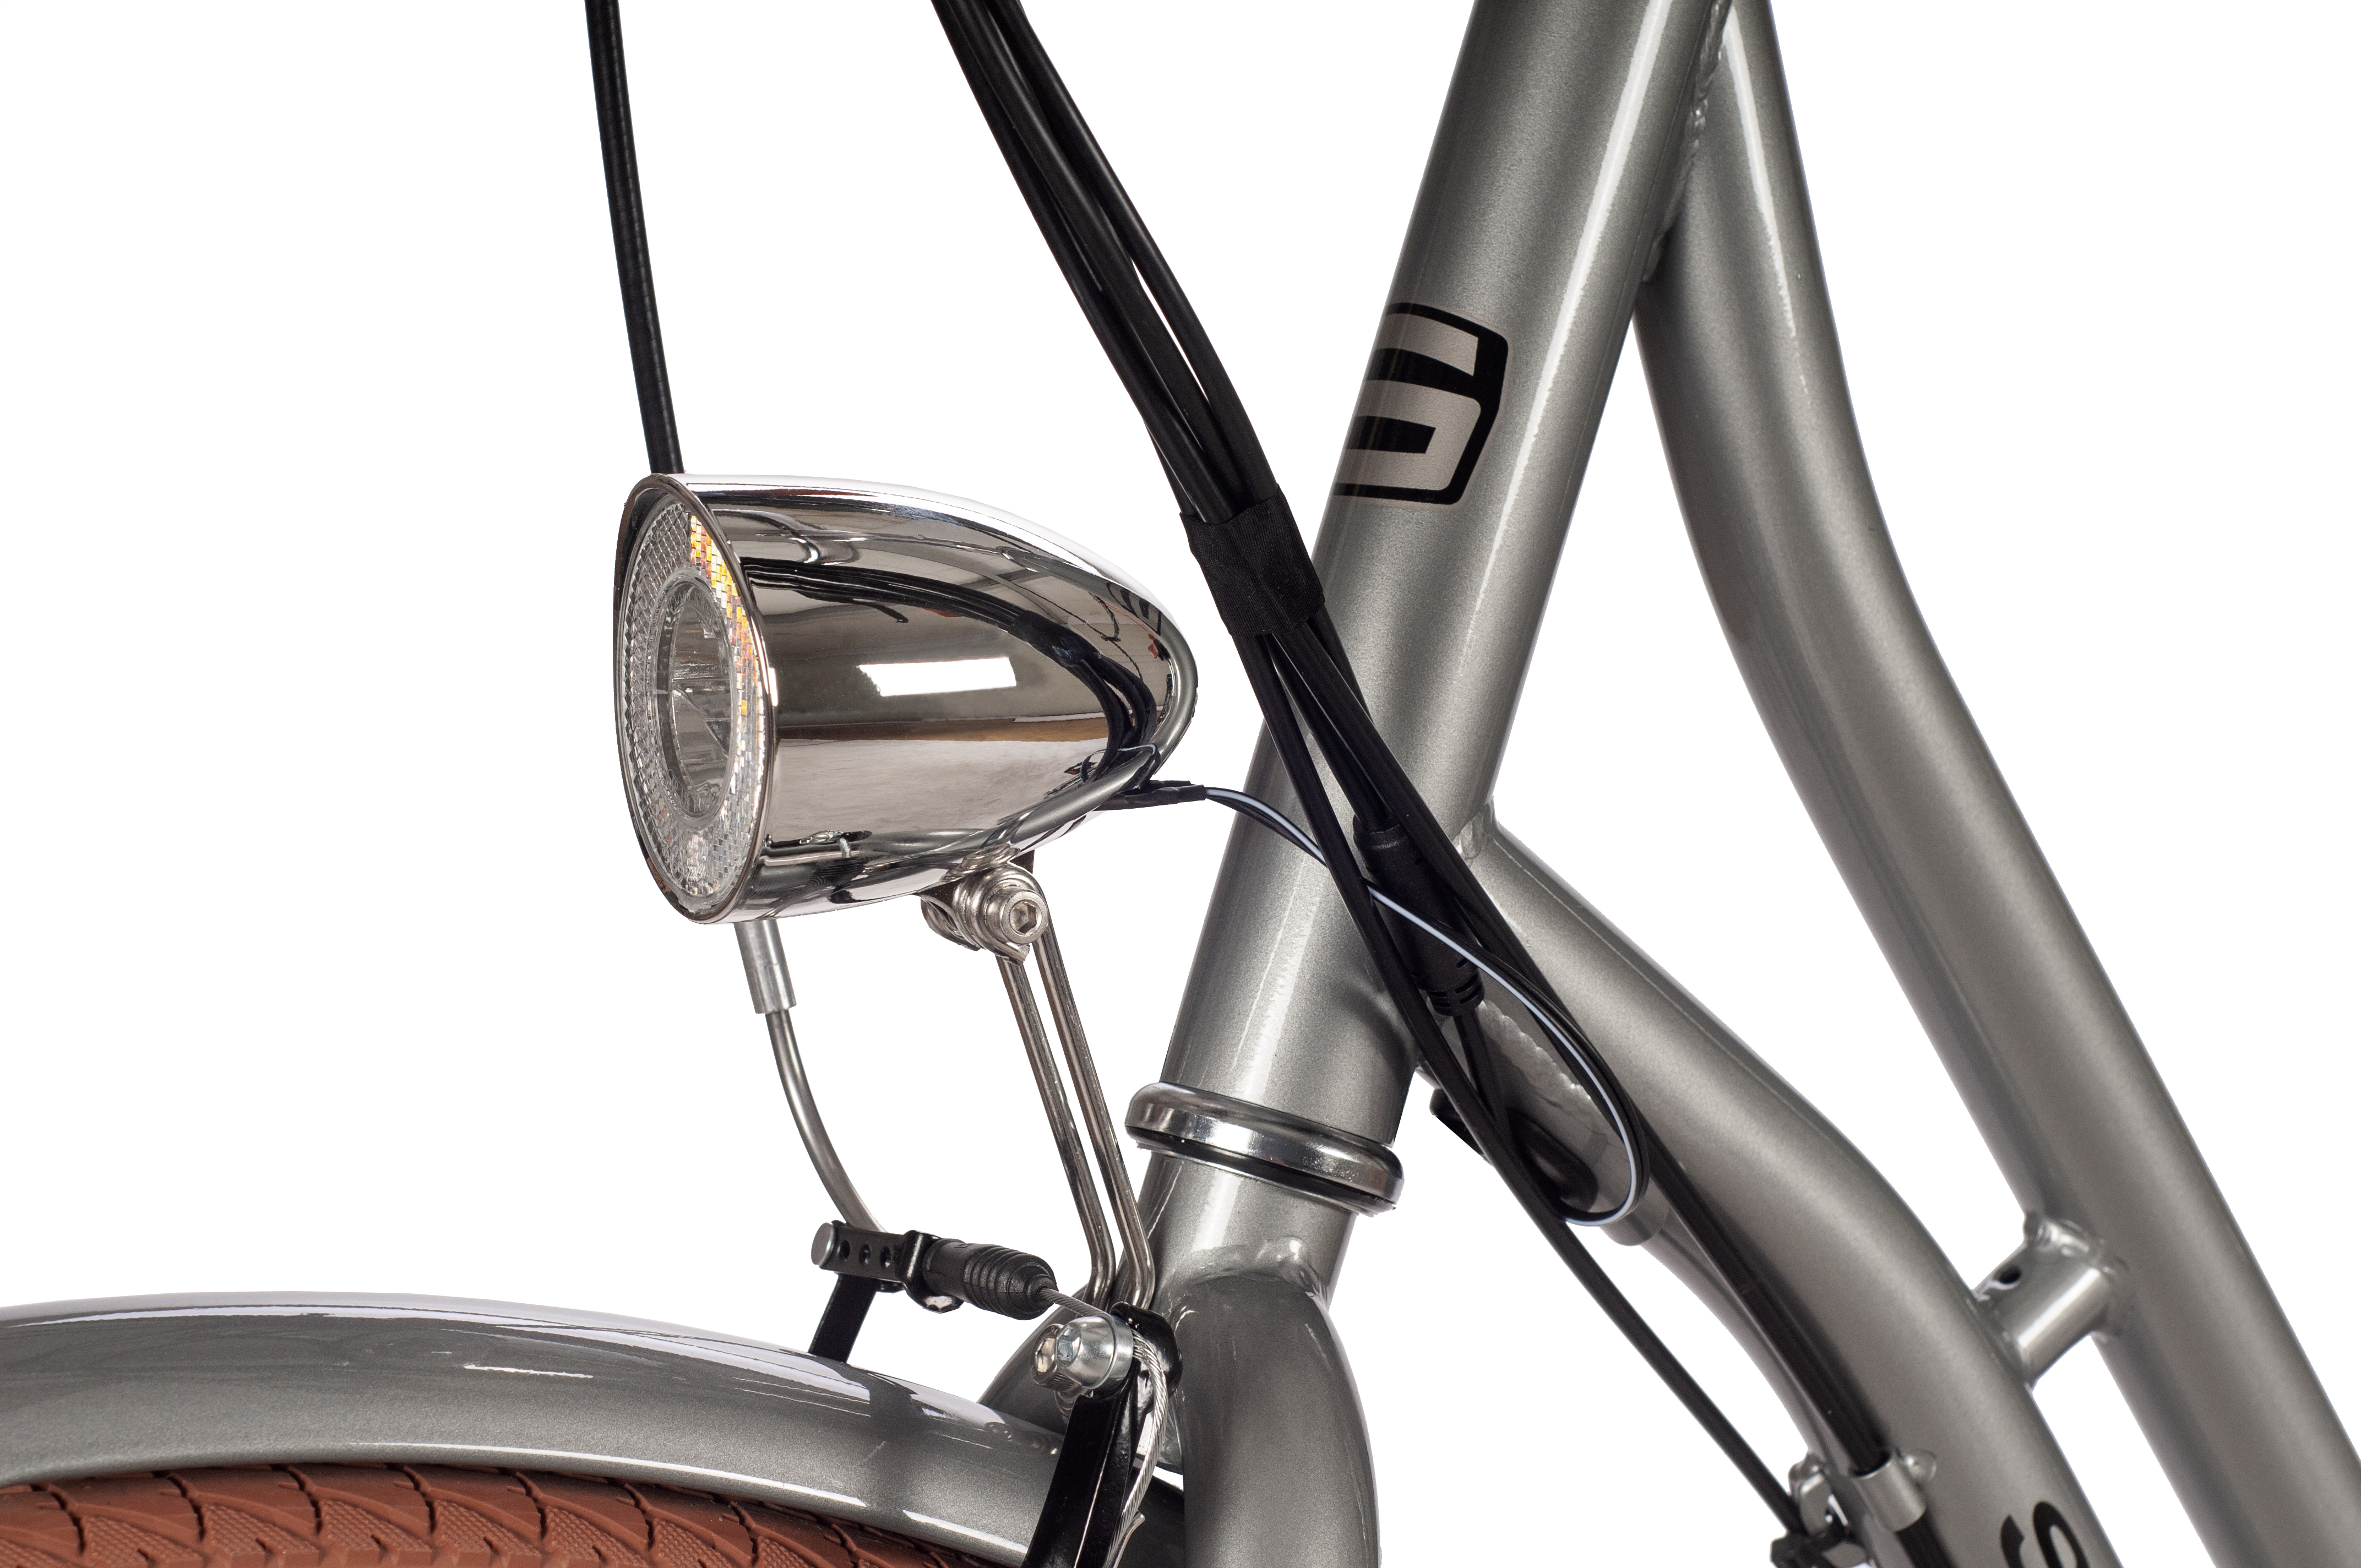 SAXONETTE Style Plus 2.0 E-Citybike Classic Wave Rücktrittbremse Vorderradmotor 3 Gang Nabenschaltung silber glänzend